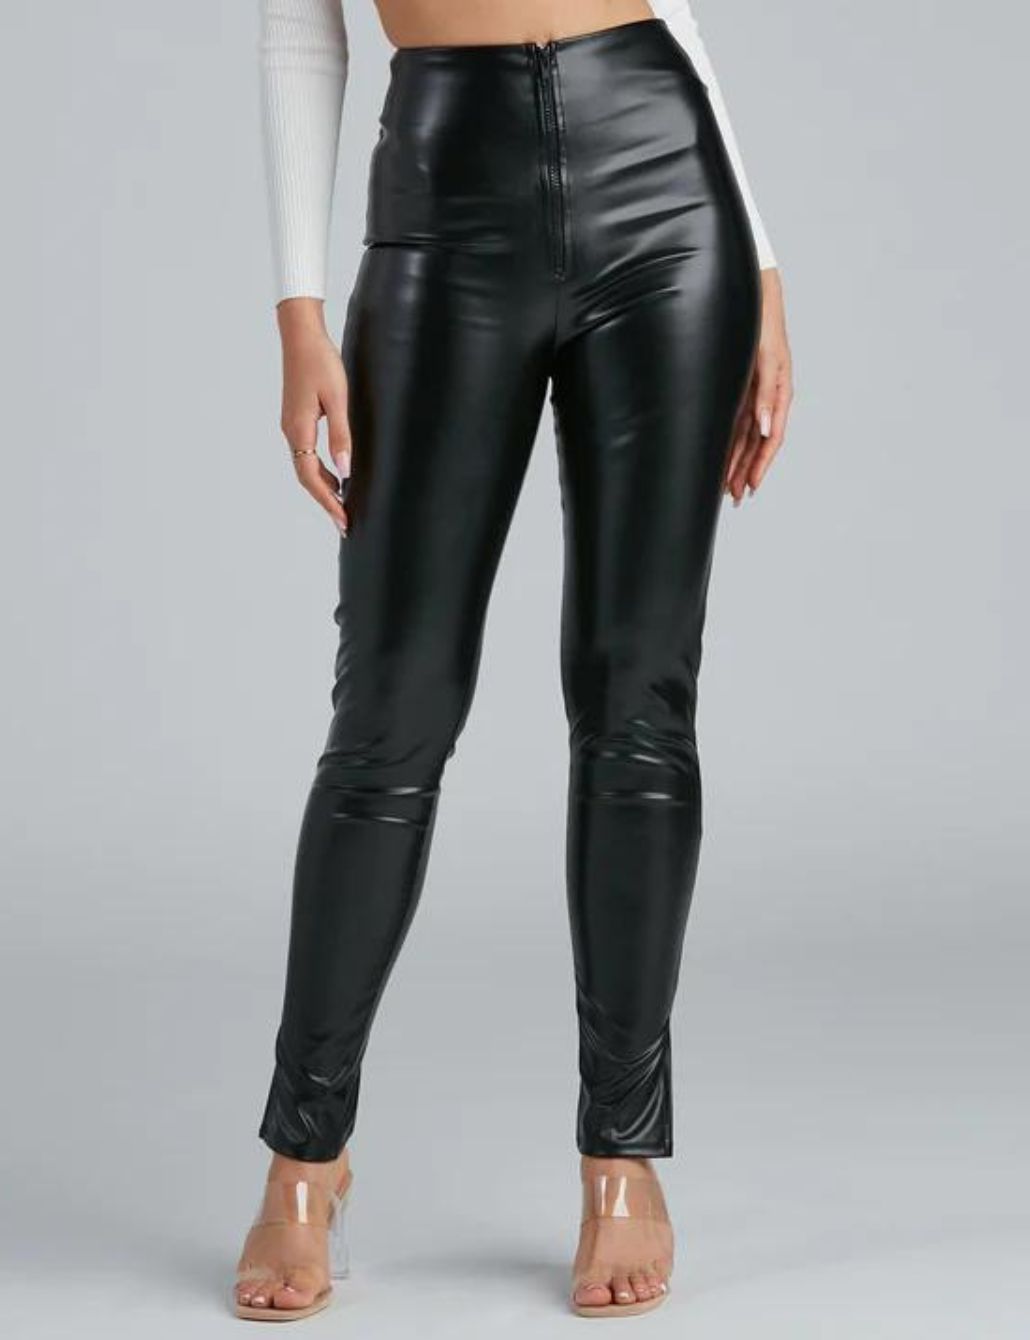 Hourglass Waist Shapewear Bodysuit - Black, Fashion Nova, Lingerie &  Sleepwear